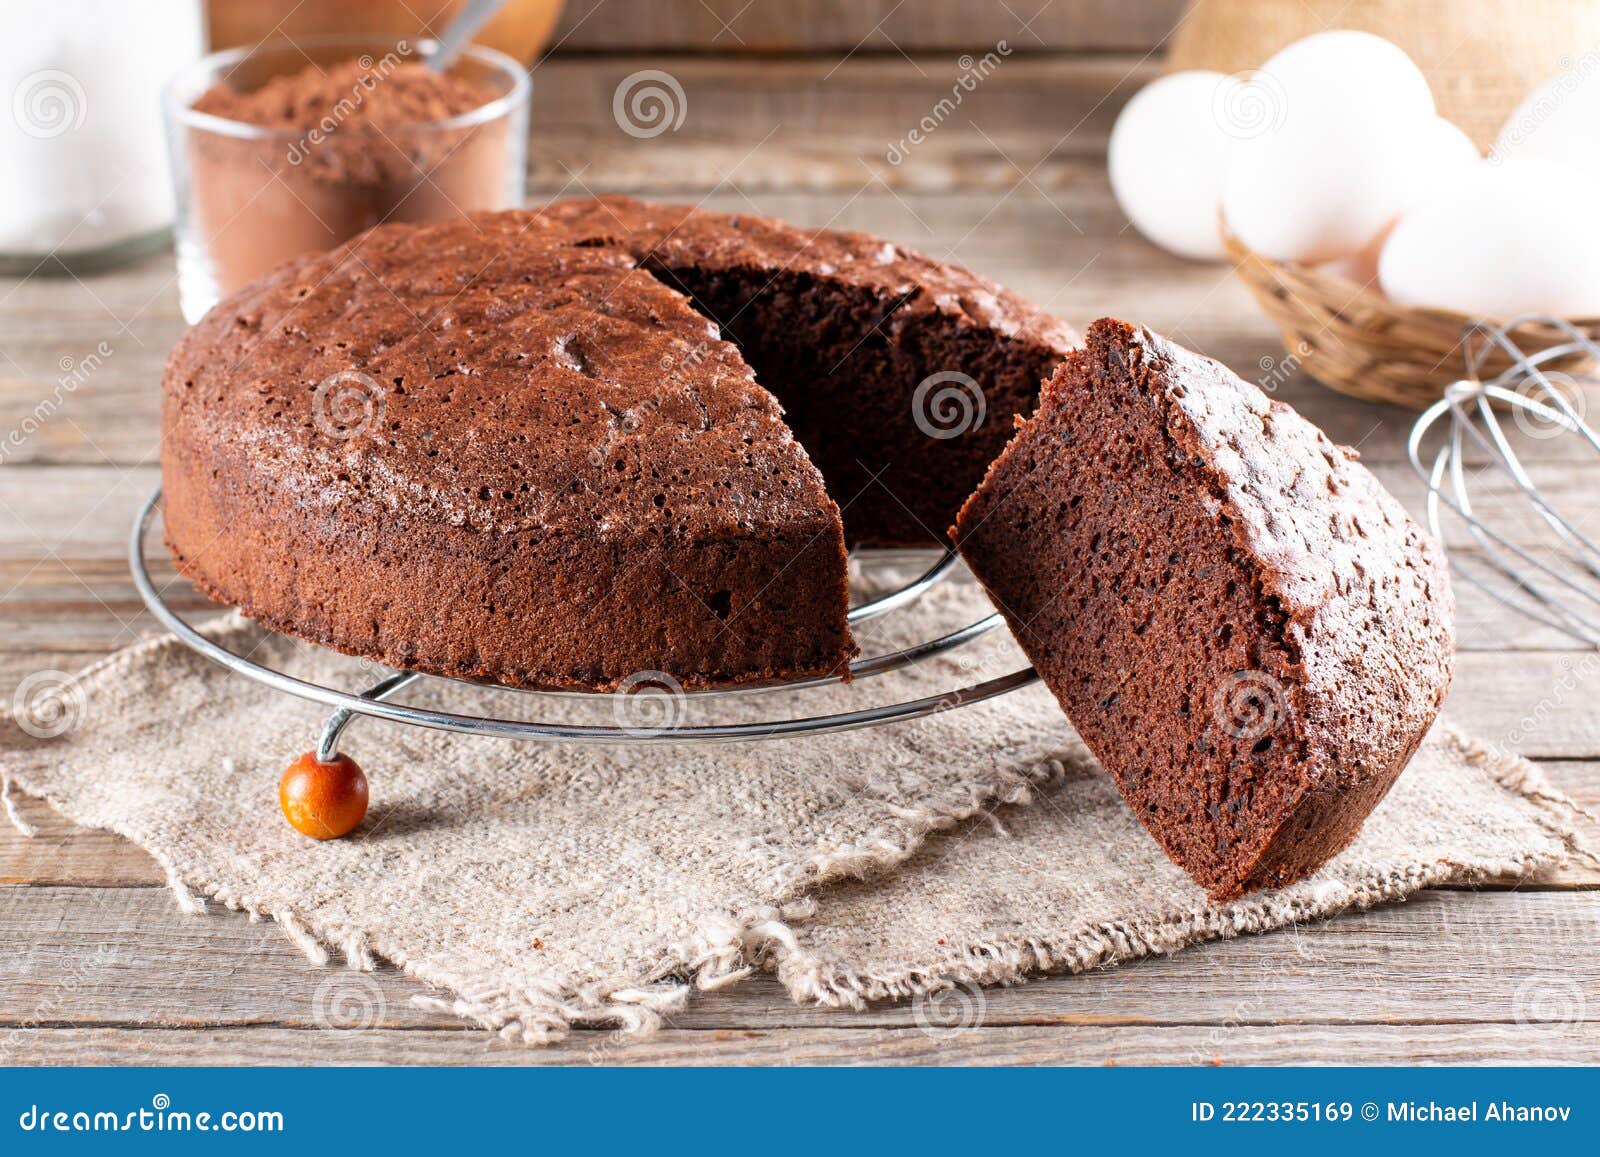 巧克力甜甜圈海绵蛋糕的做法_菜谱_豆果美食